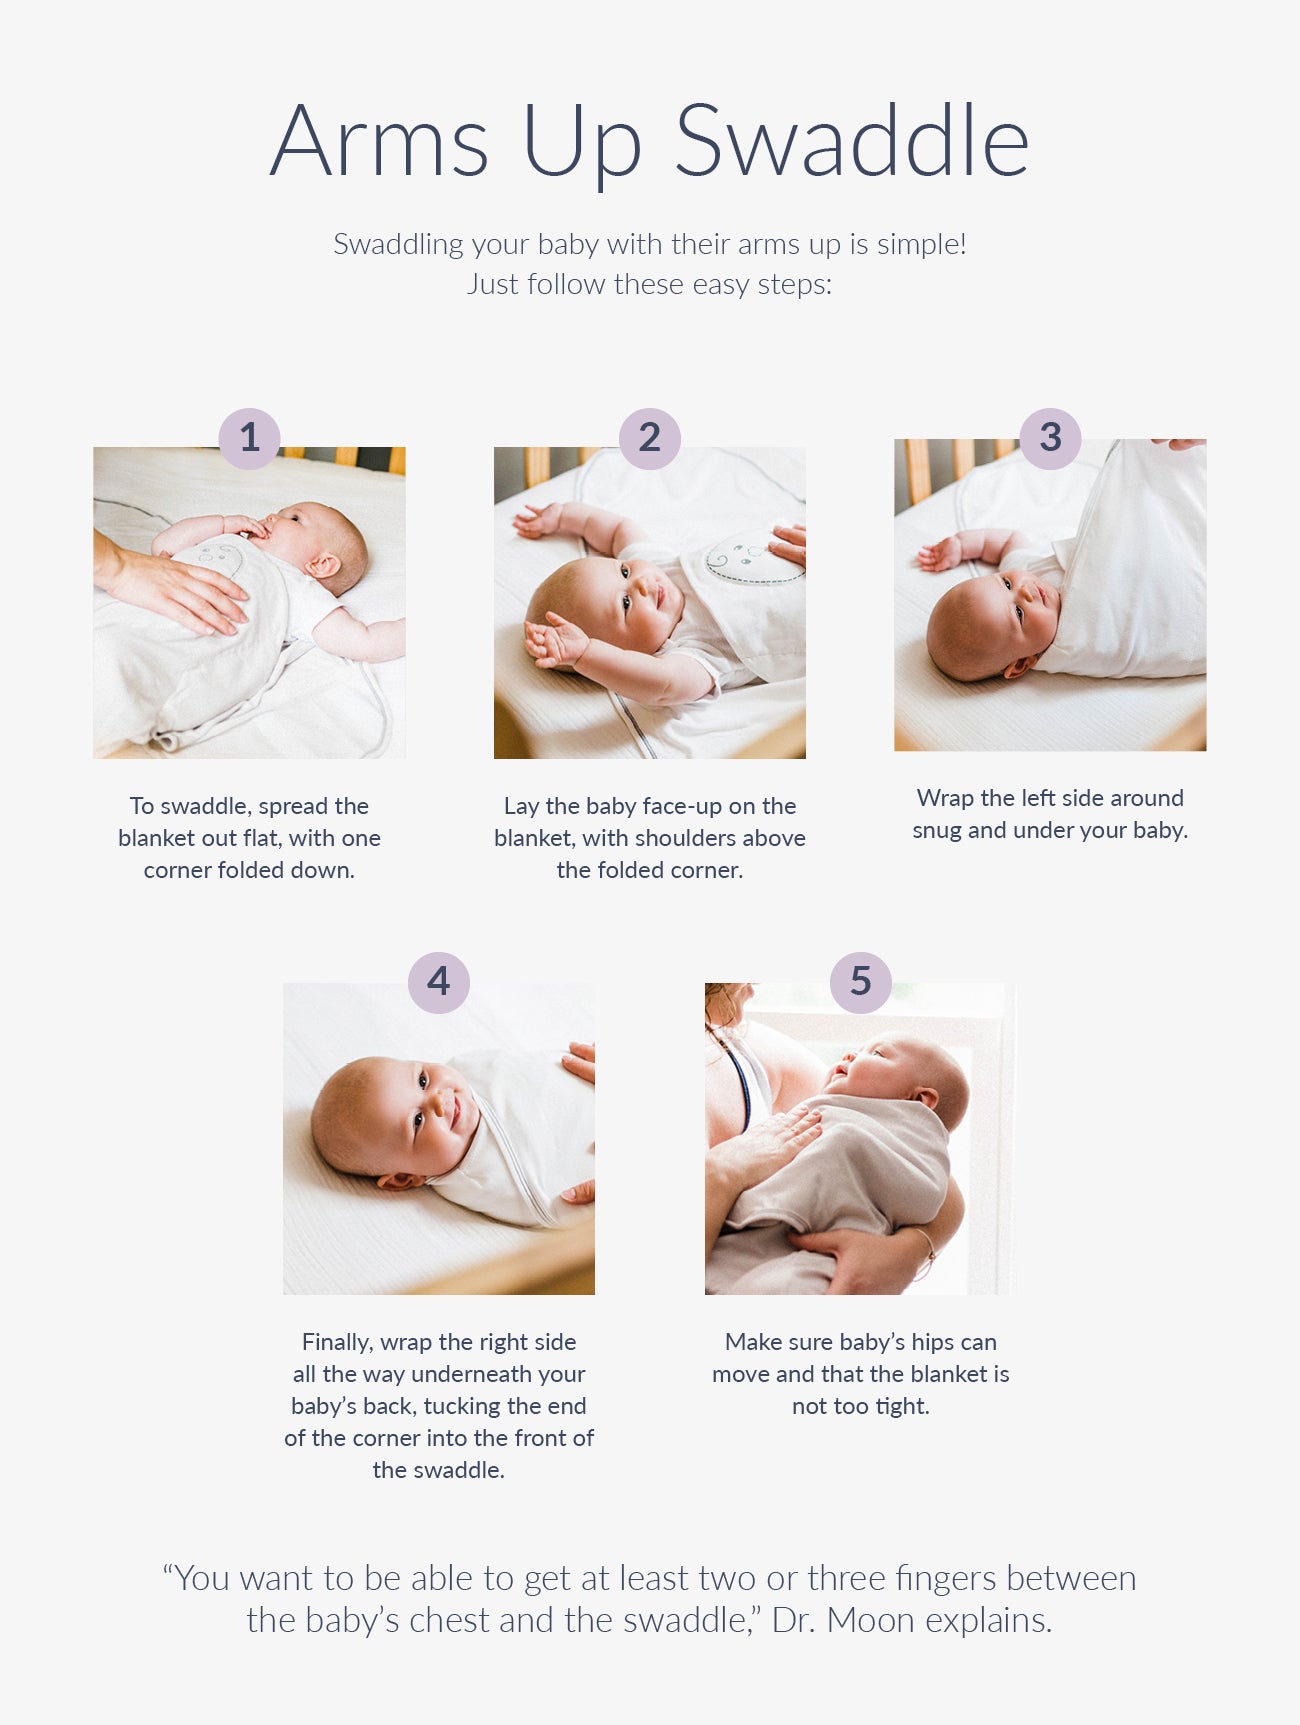 arms up newborn baby startle reflex info-graphic